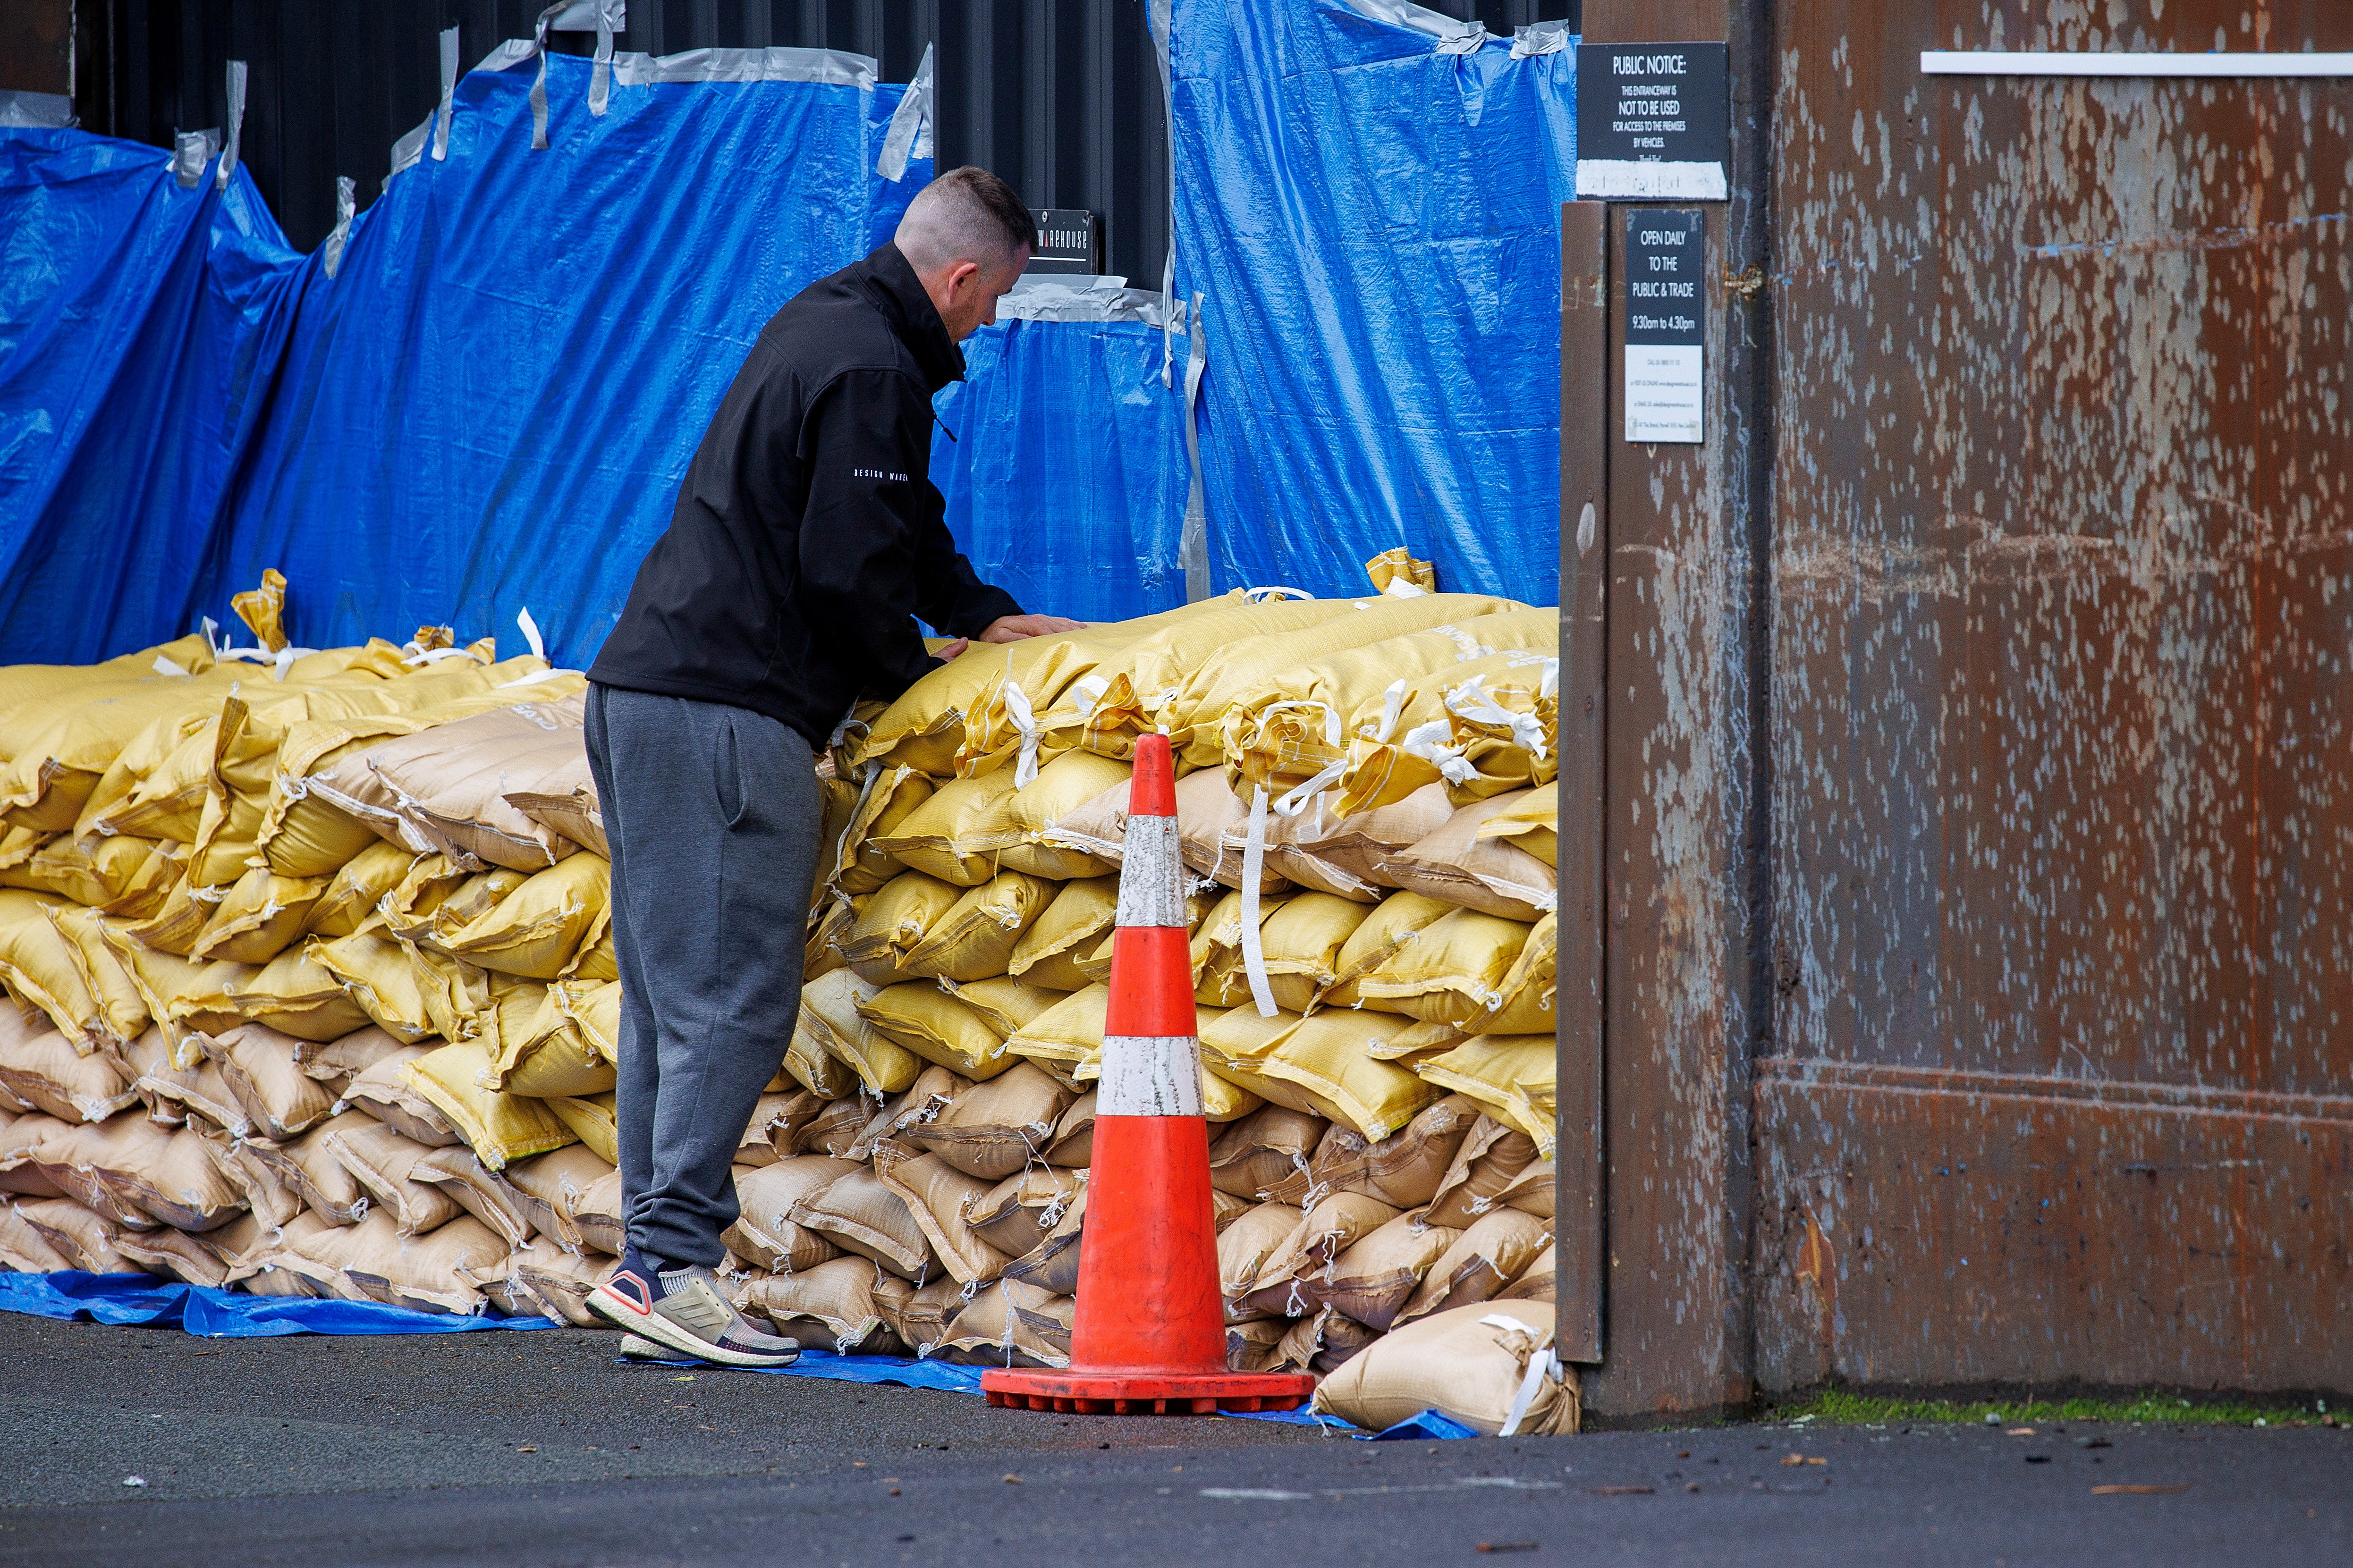 La ciudad de Auckland se recupera todavía de las inundaciones históricas de finales de enero, que dejaron cuatro fallecidos. (REUTERS)